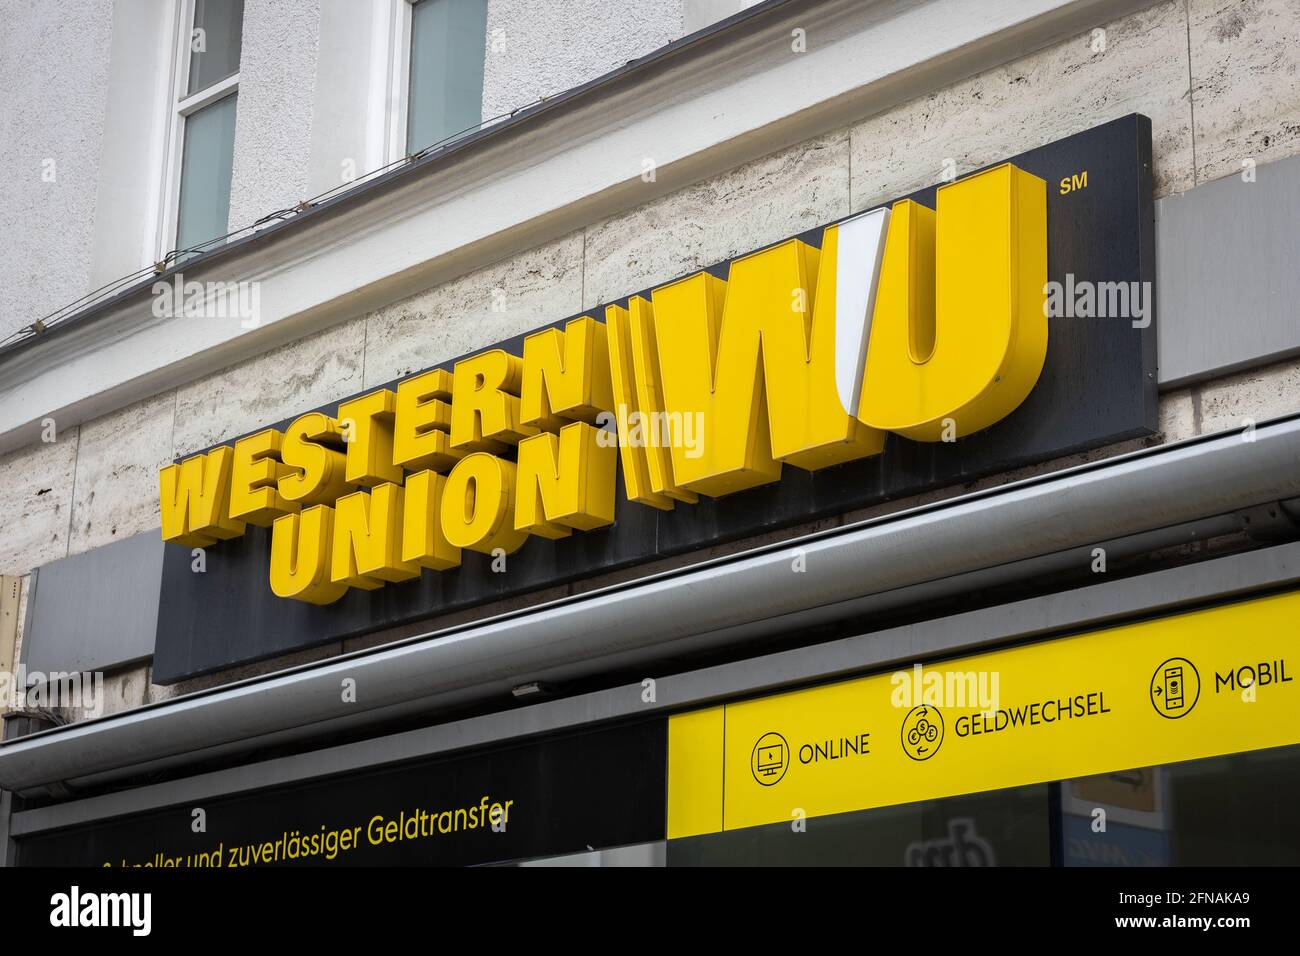 Western Union Building Shop Stockfotos und -bilder Kaufen - Alamy